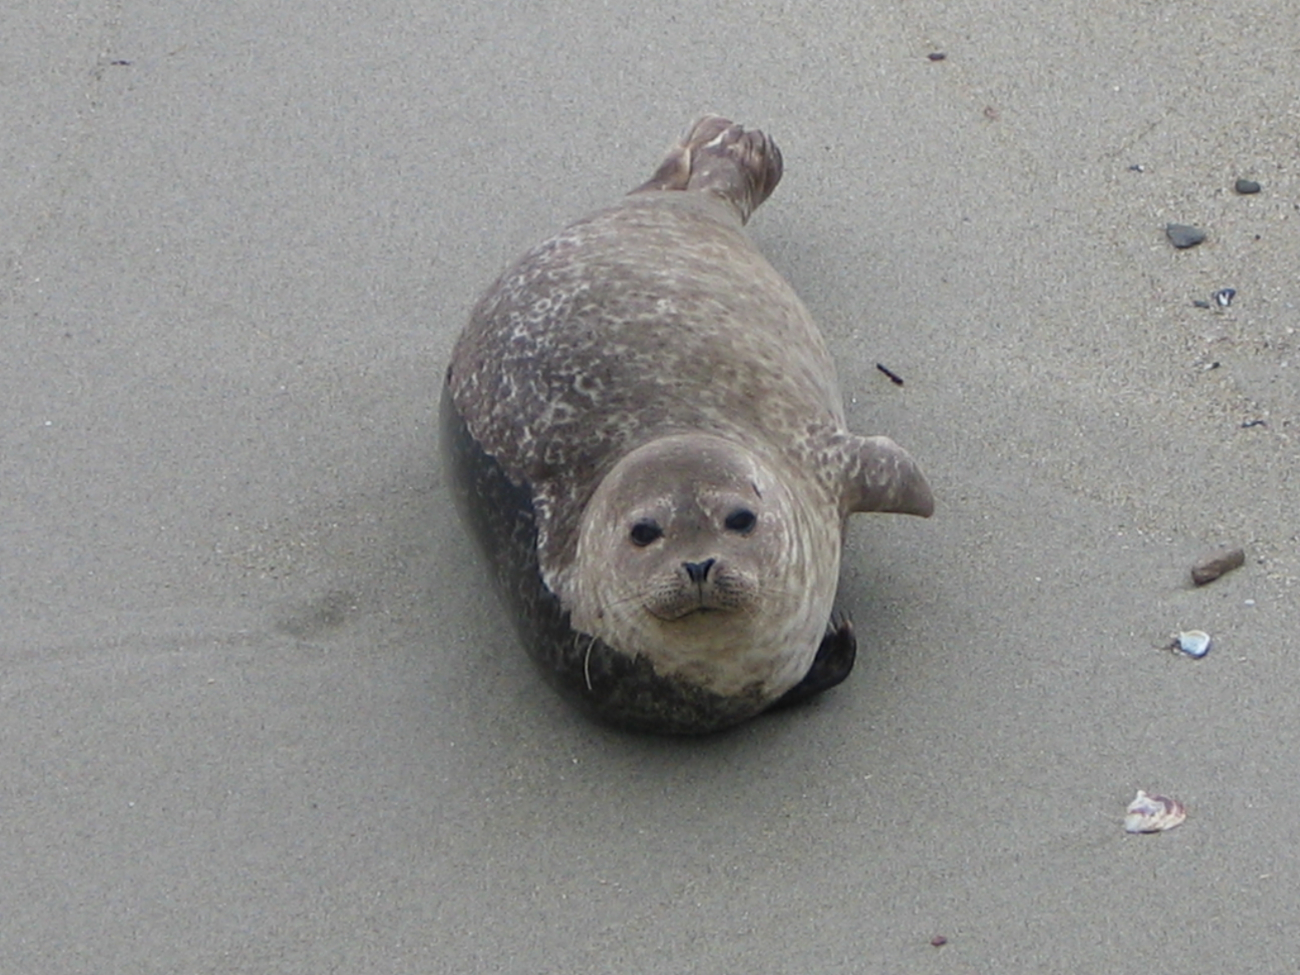 A harbor seal pup